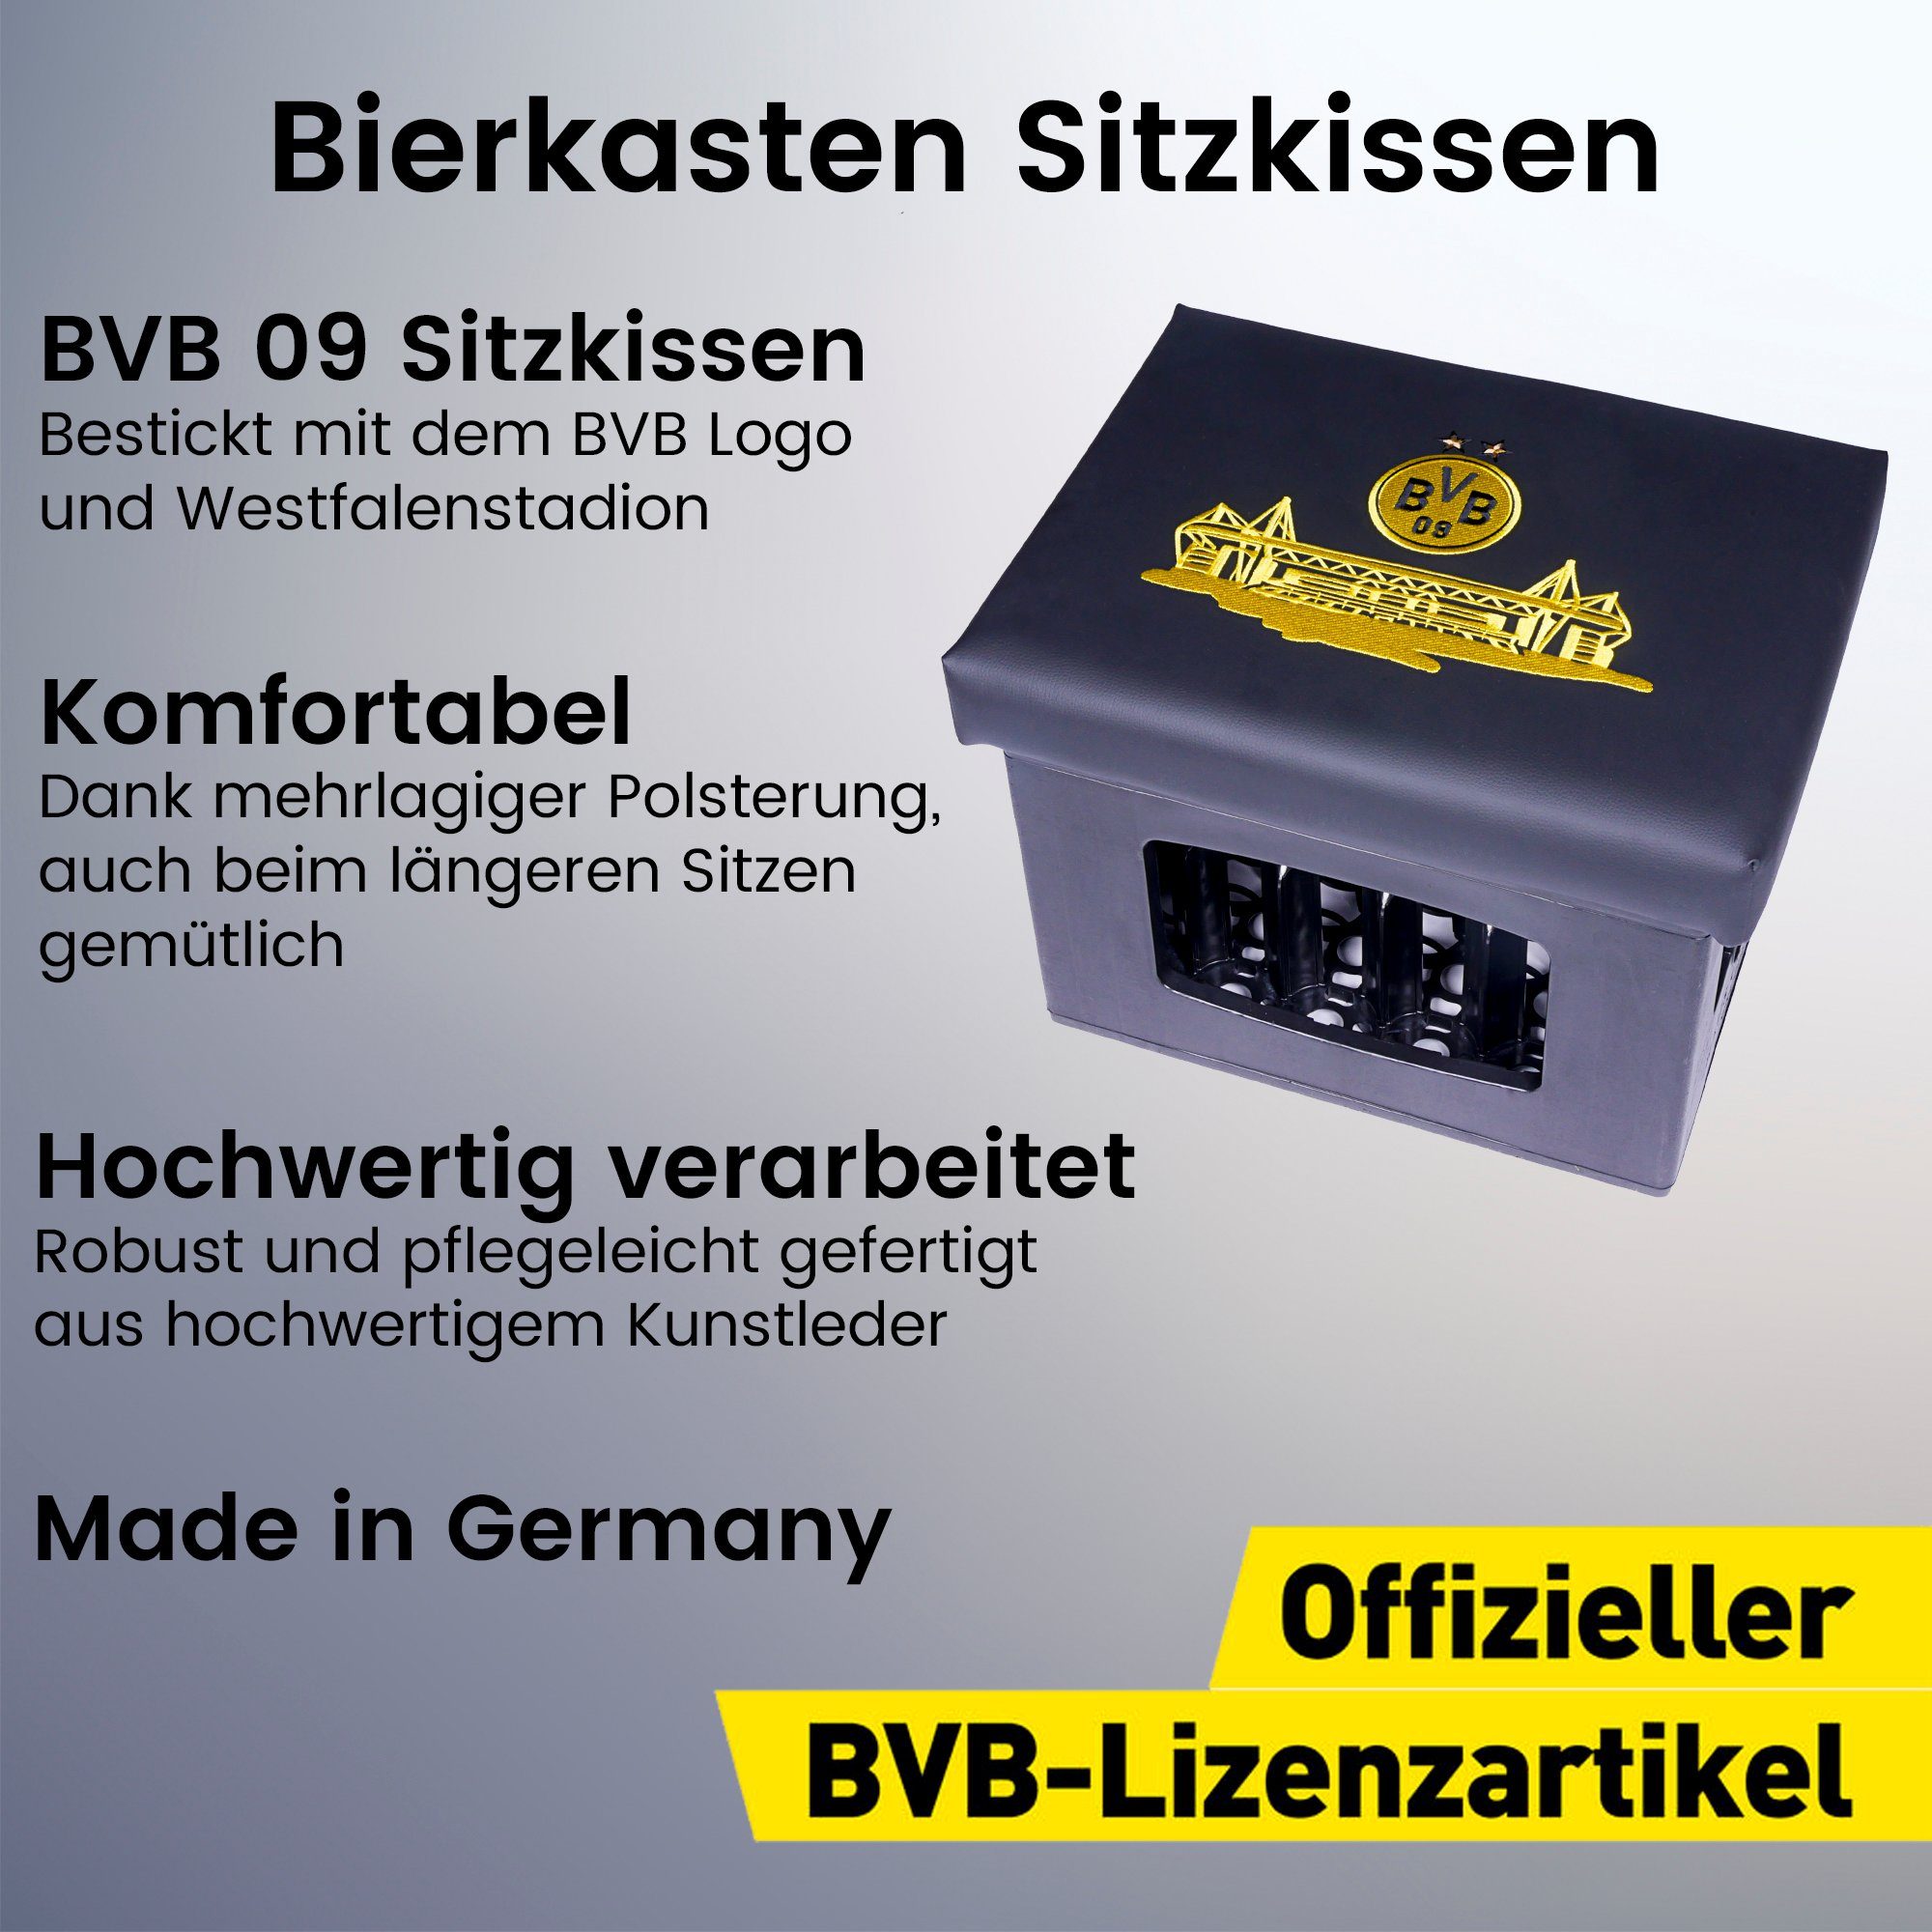 Borussia Dortmund Sitzkissen für Bierkisten, BVB 09 Bierkasten Sitz,  Sitzauflage, Kunstleder mit dicker Polsterung